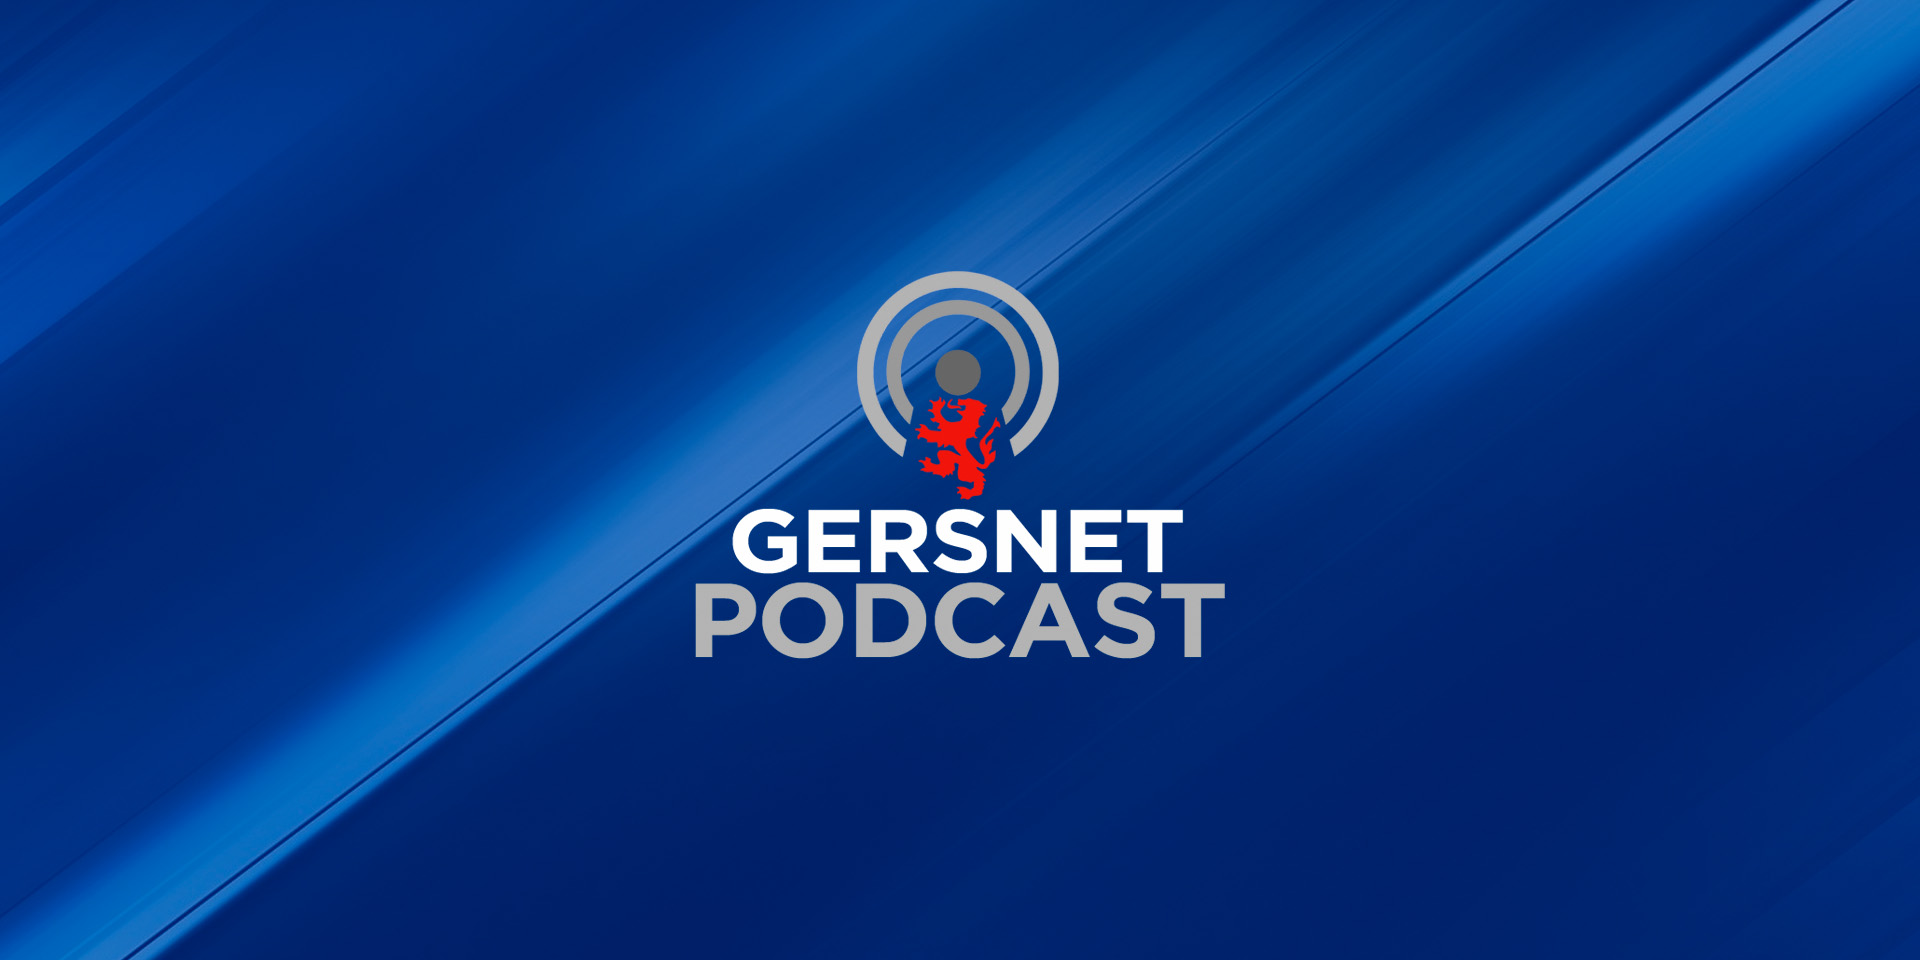 Gersnet Podcast 300 - Aberdeen Preview